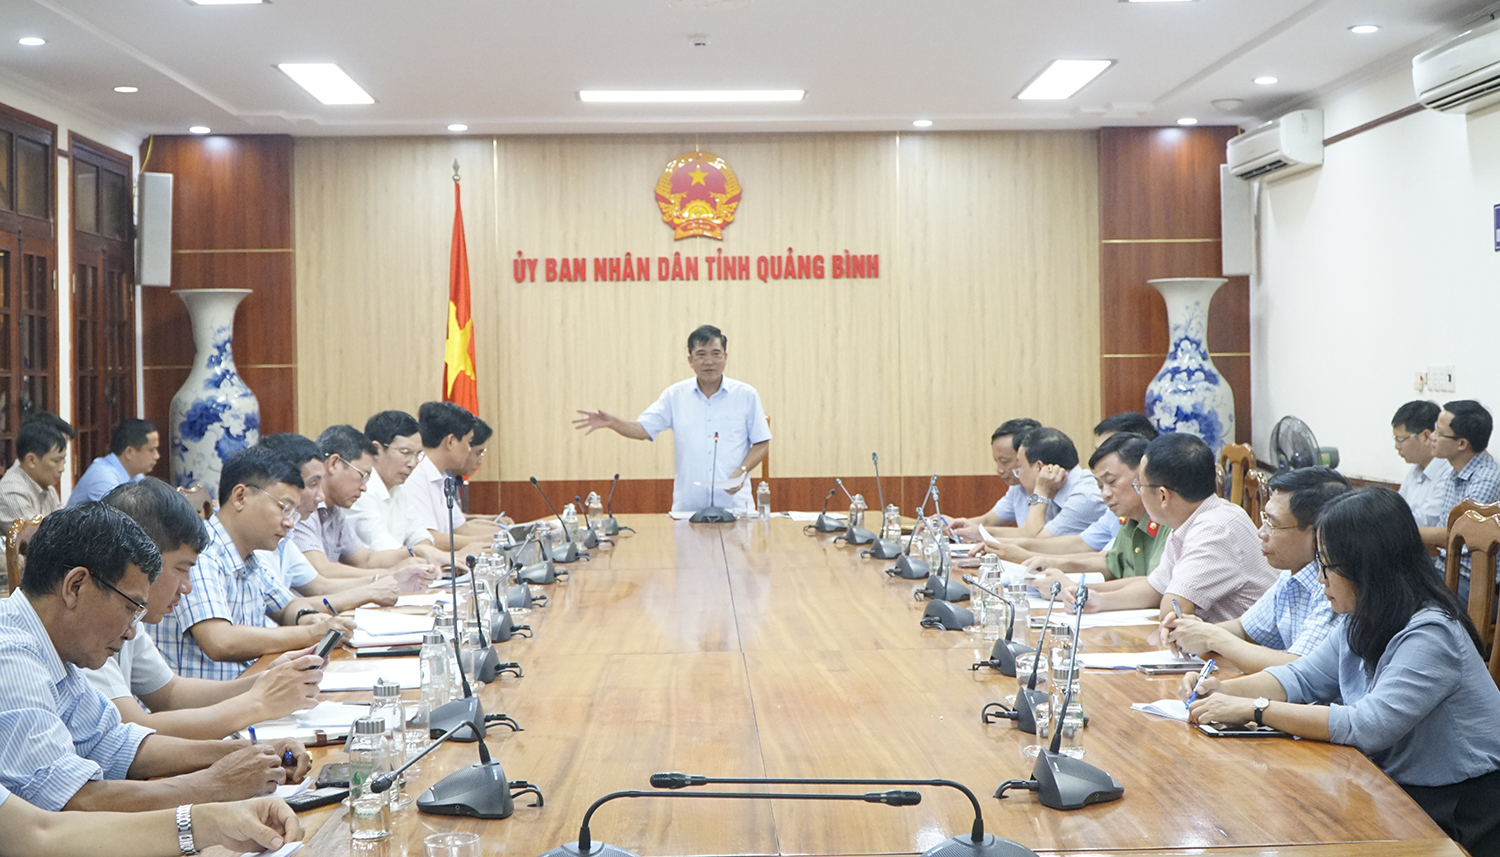 Đồng chí Phó Chủ tịch Thường trực UBND tỉnh Đoàn Ngọc Lâm kết luận buổi làm việc.